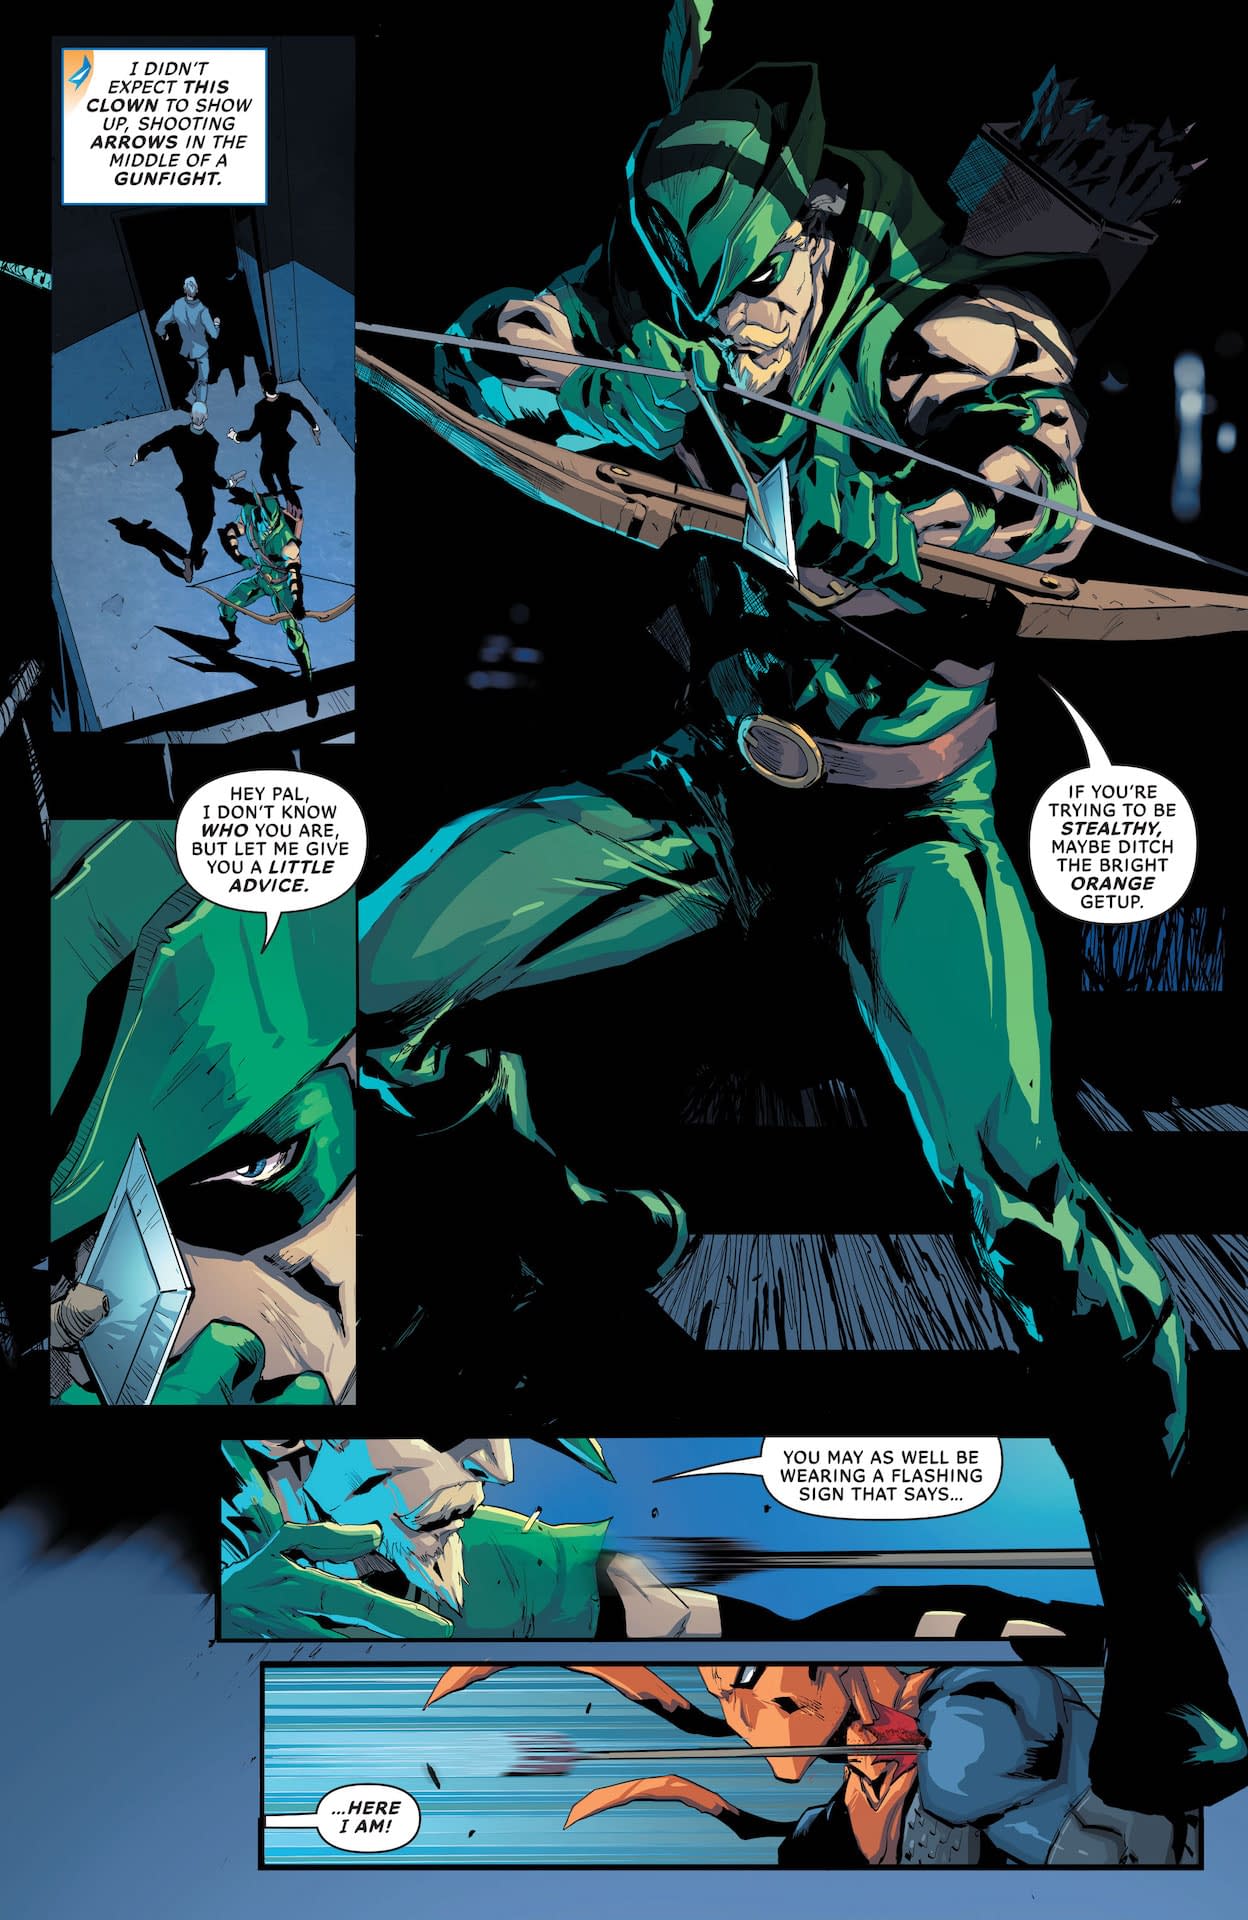 Deathstroke Inc #12 Preview: Deathstroke vs. Green Arrow